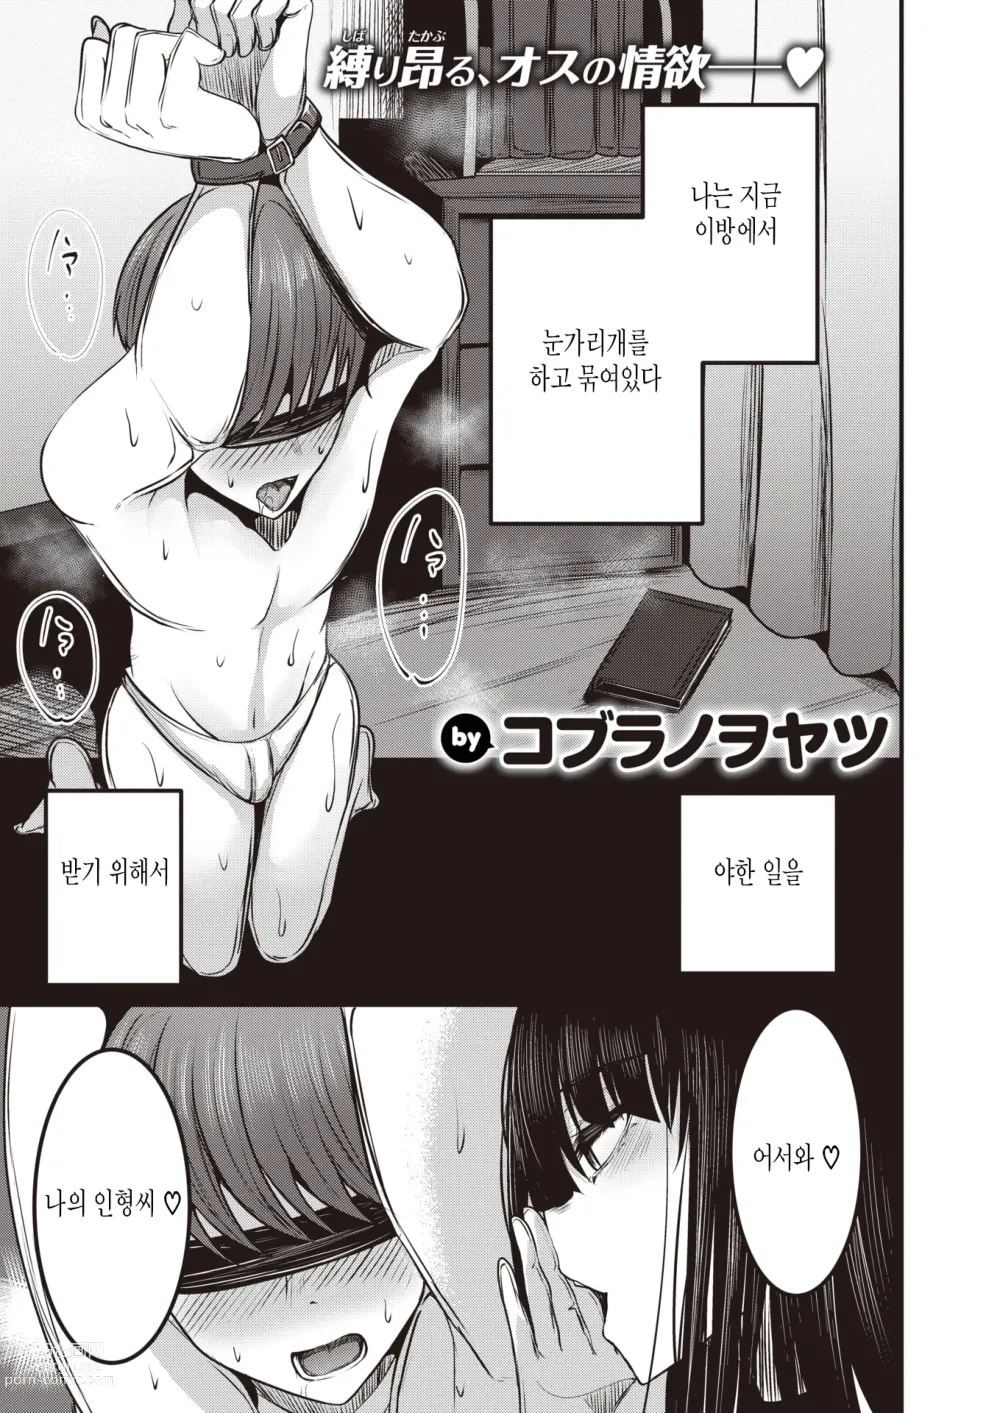 Page 1 of manga Kannou-san wa Sagashiteru.